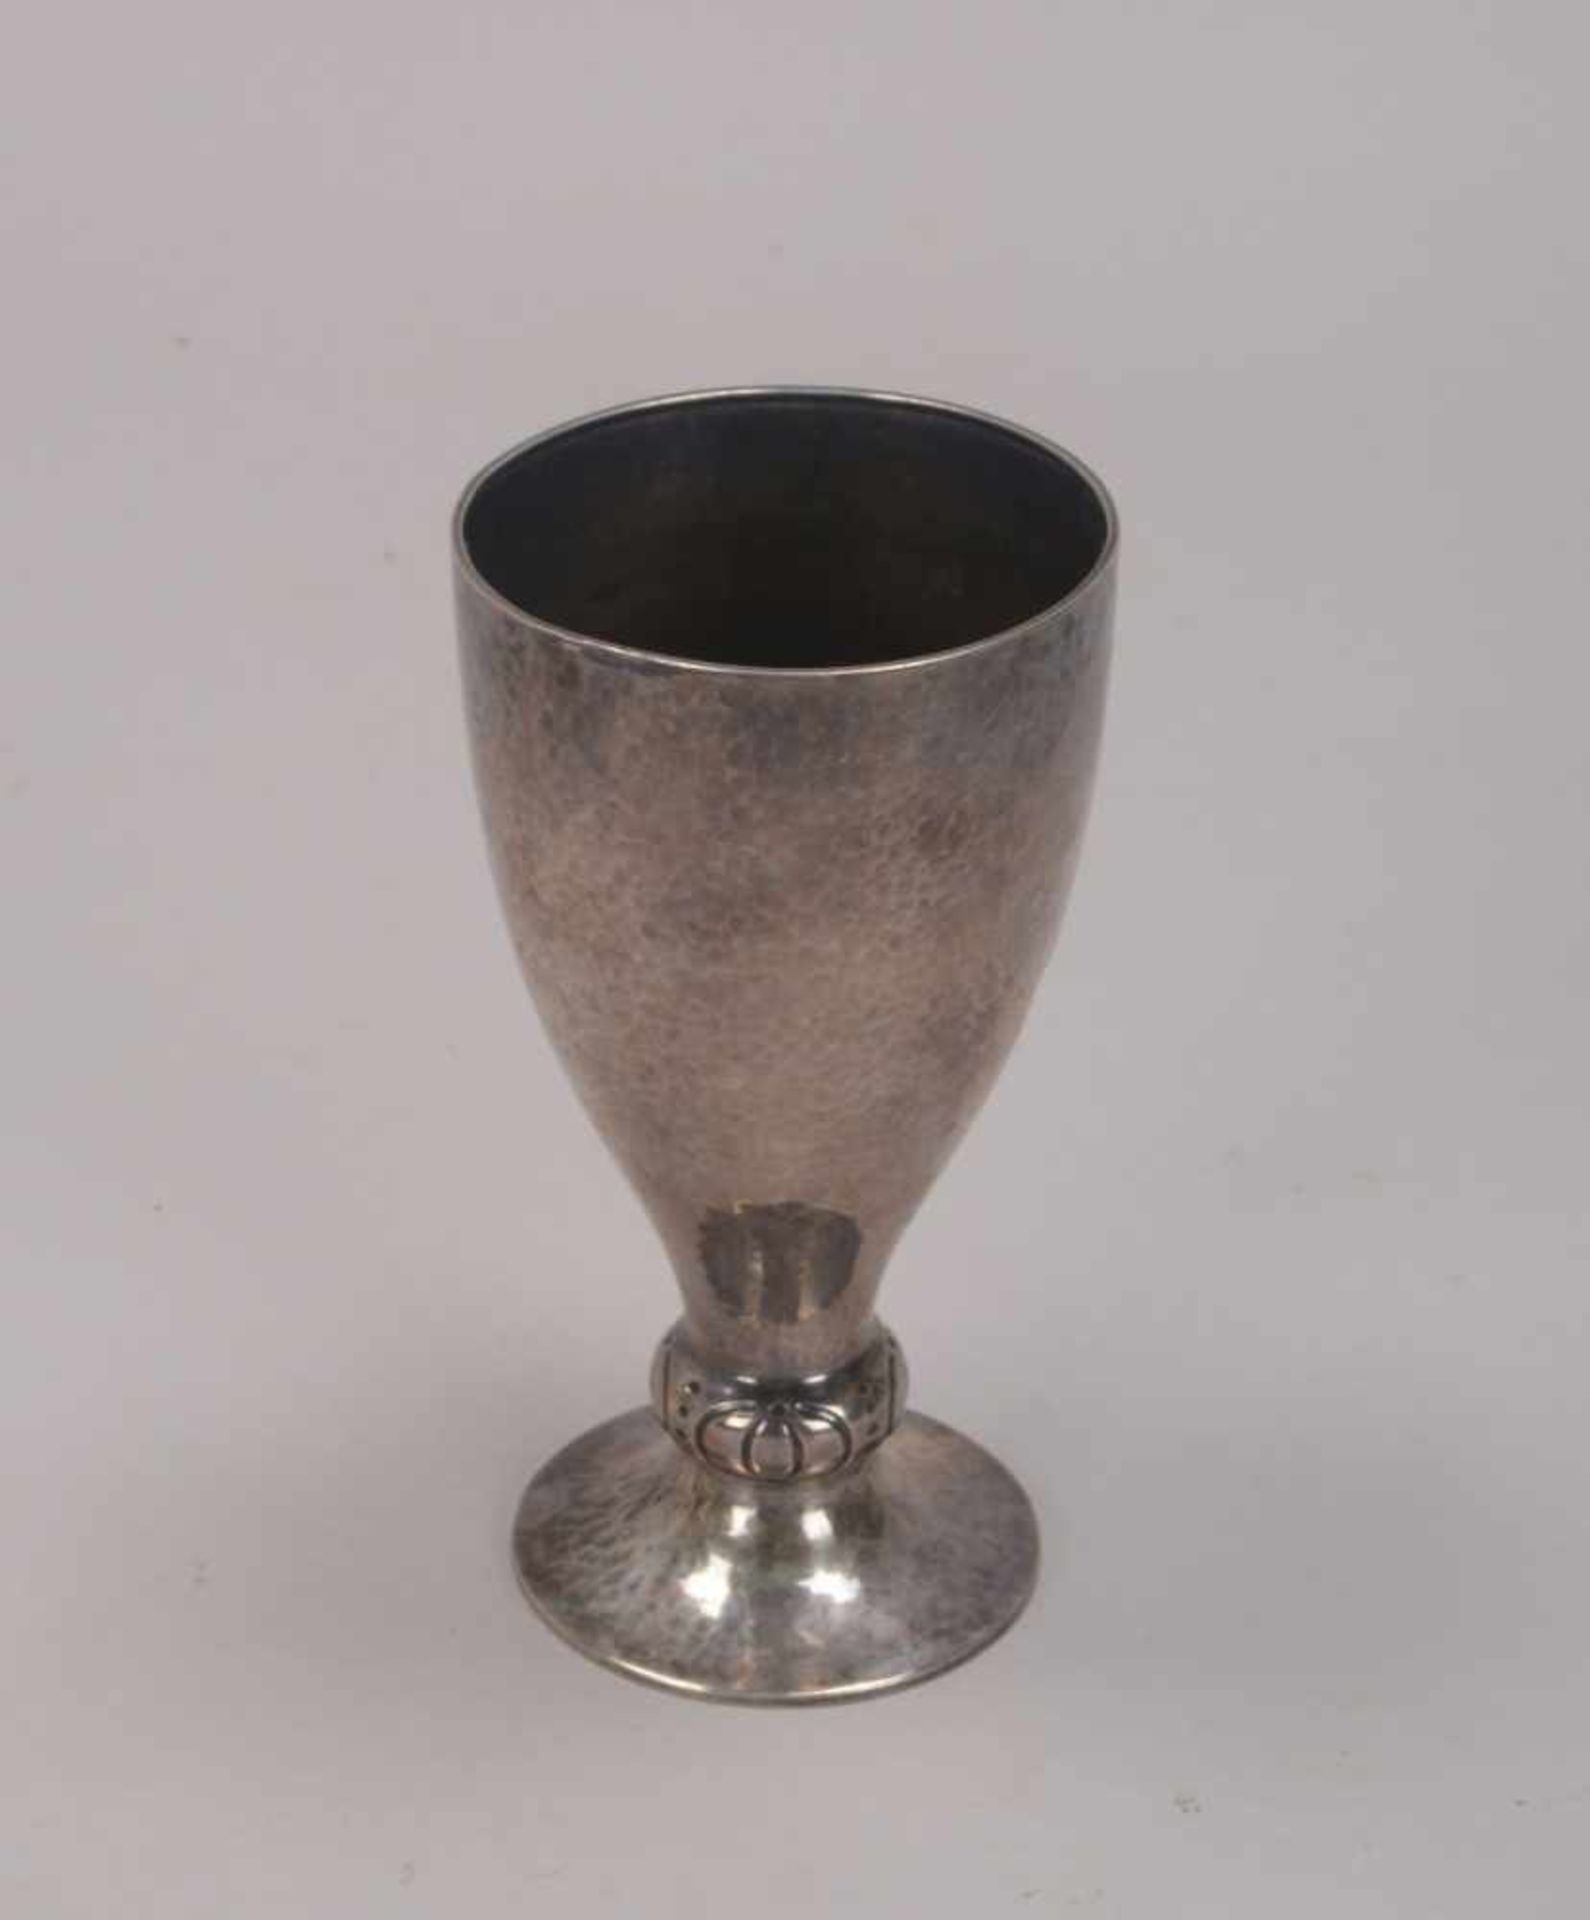 Kelch (Schweden), 830 Silber, mehrfach punziert; Höhe 17 cm, Gewicht 183 g - Bild 2 aus 3